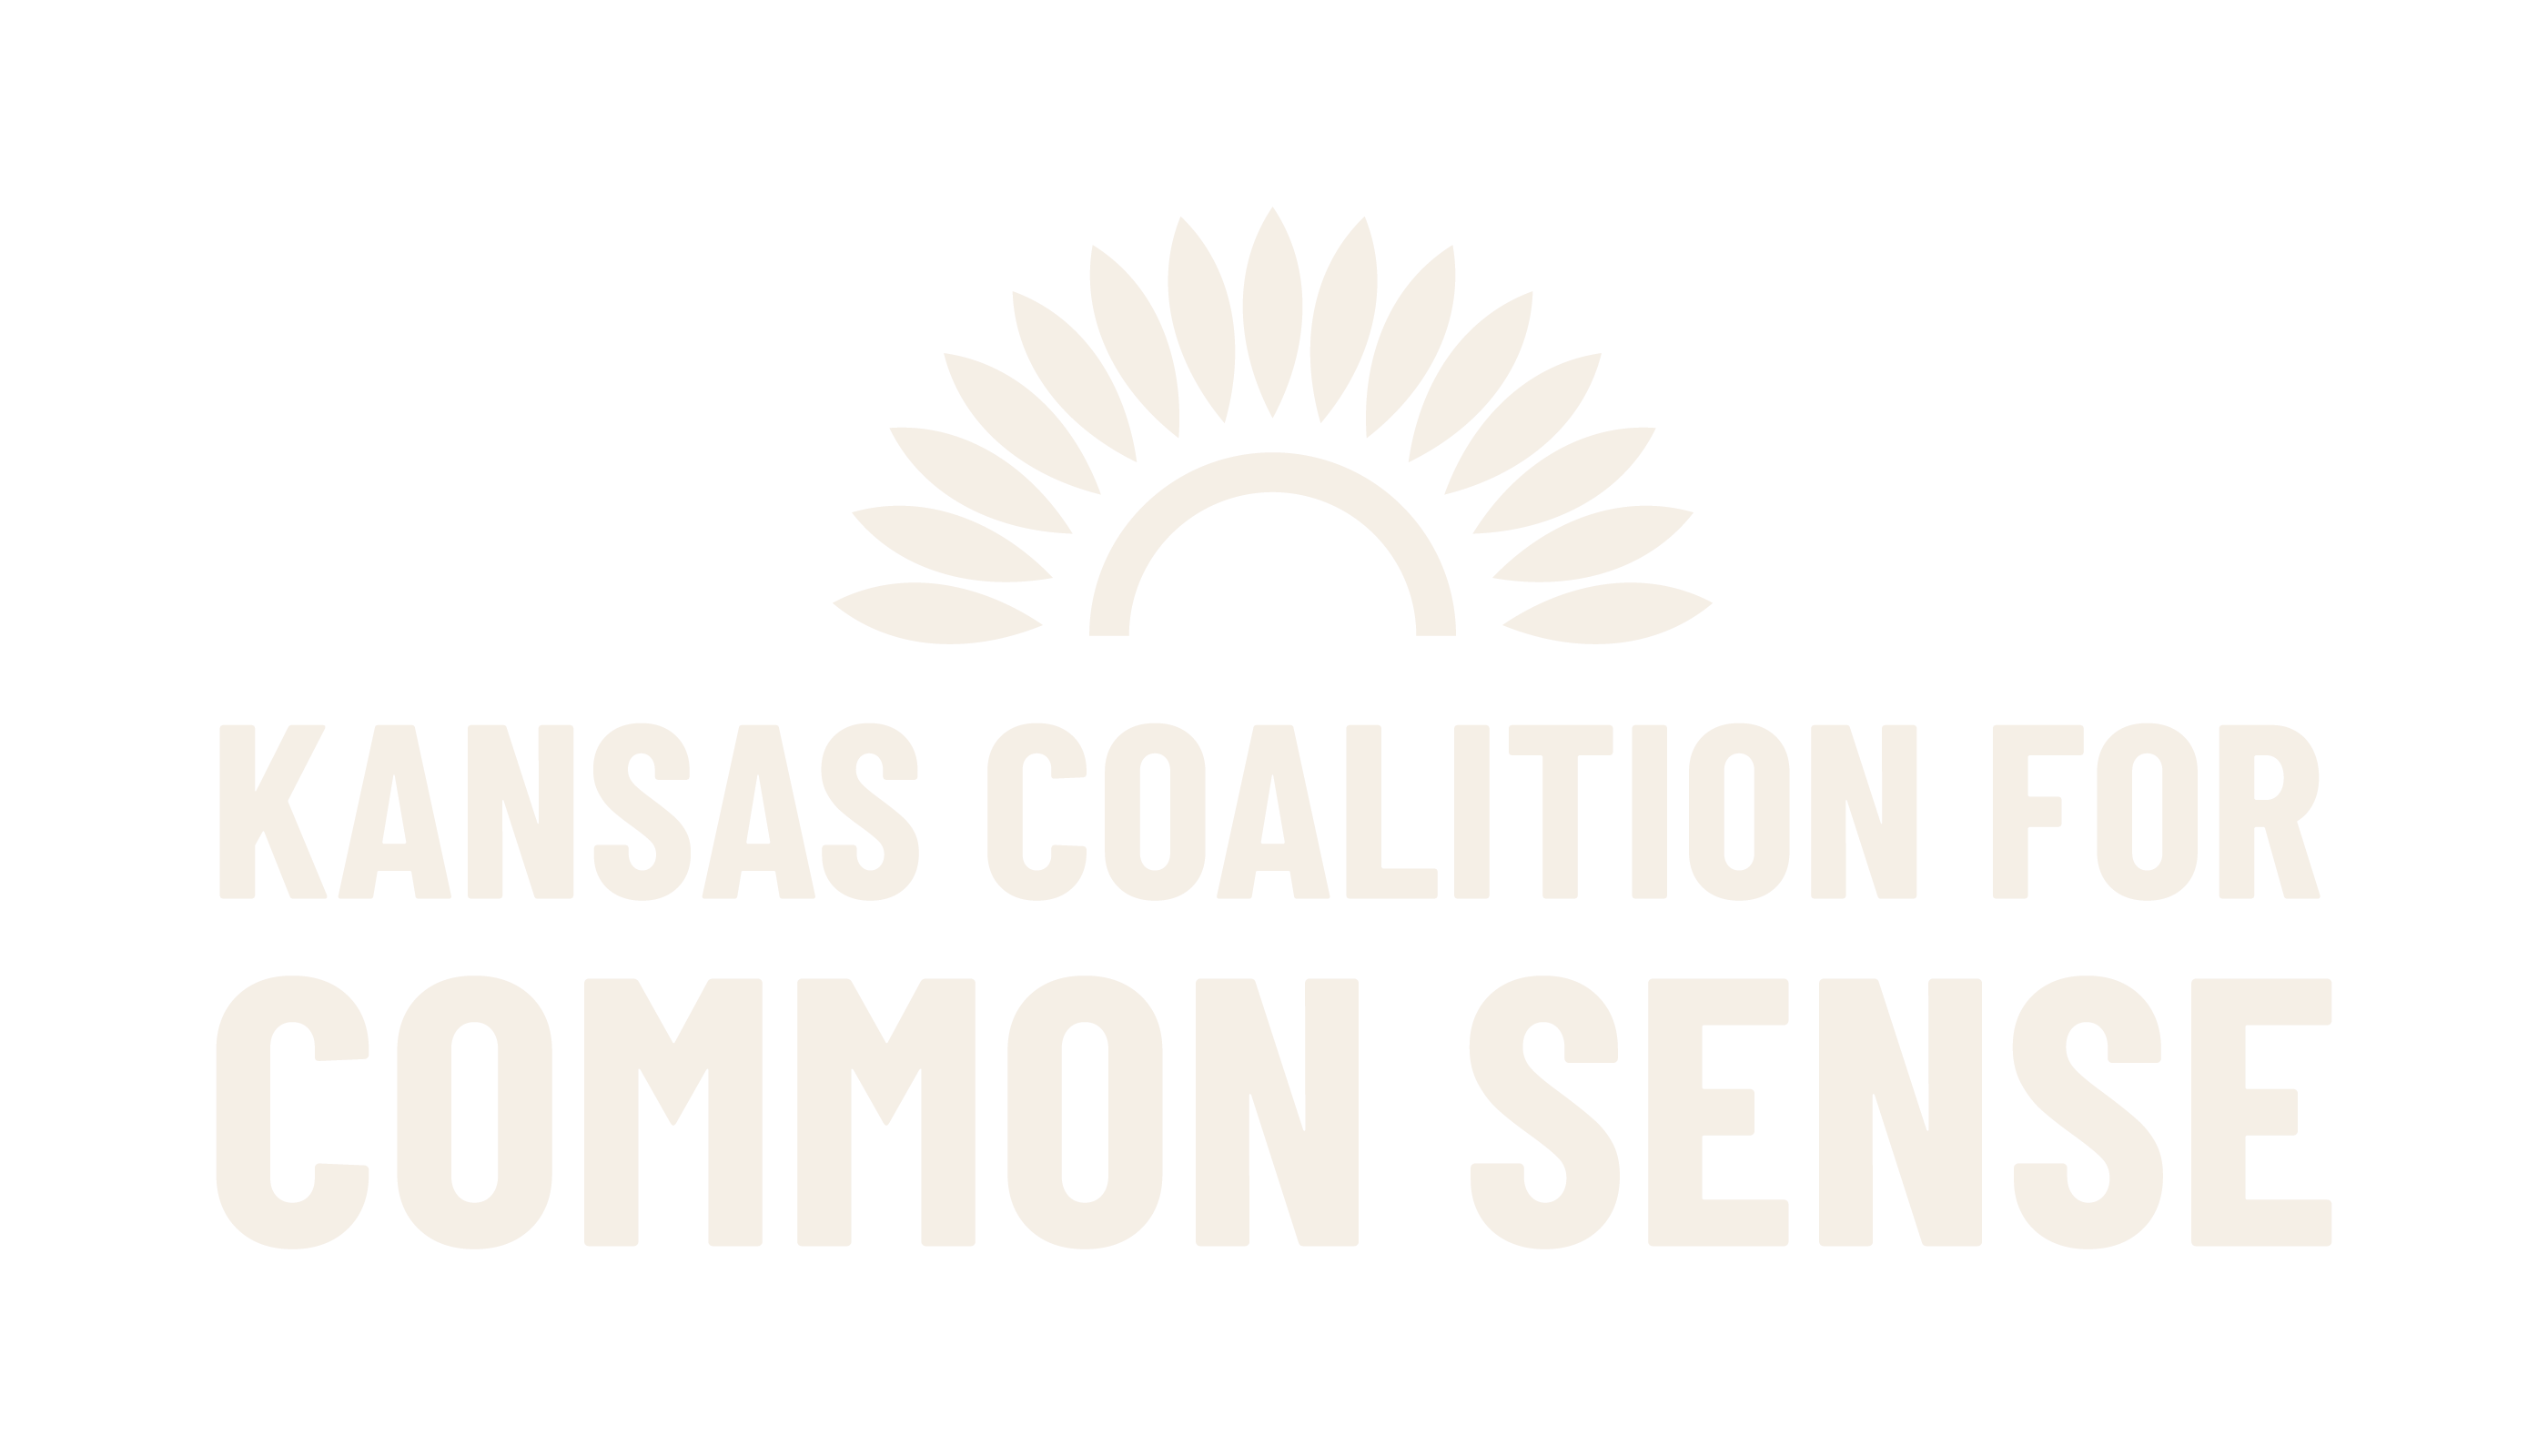 Kansas Coalition for Common Sense